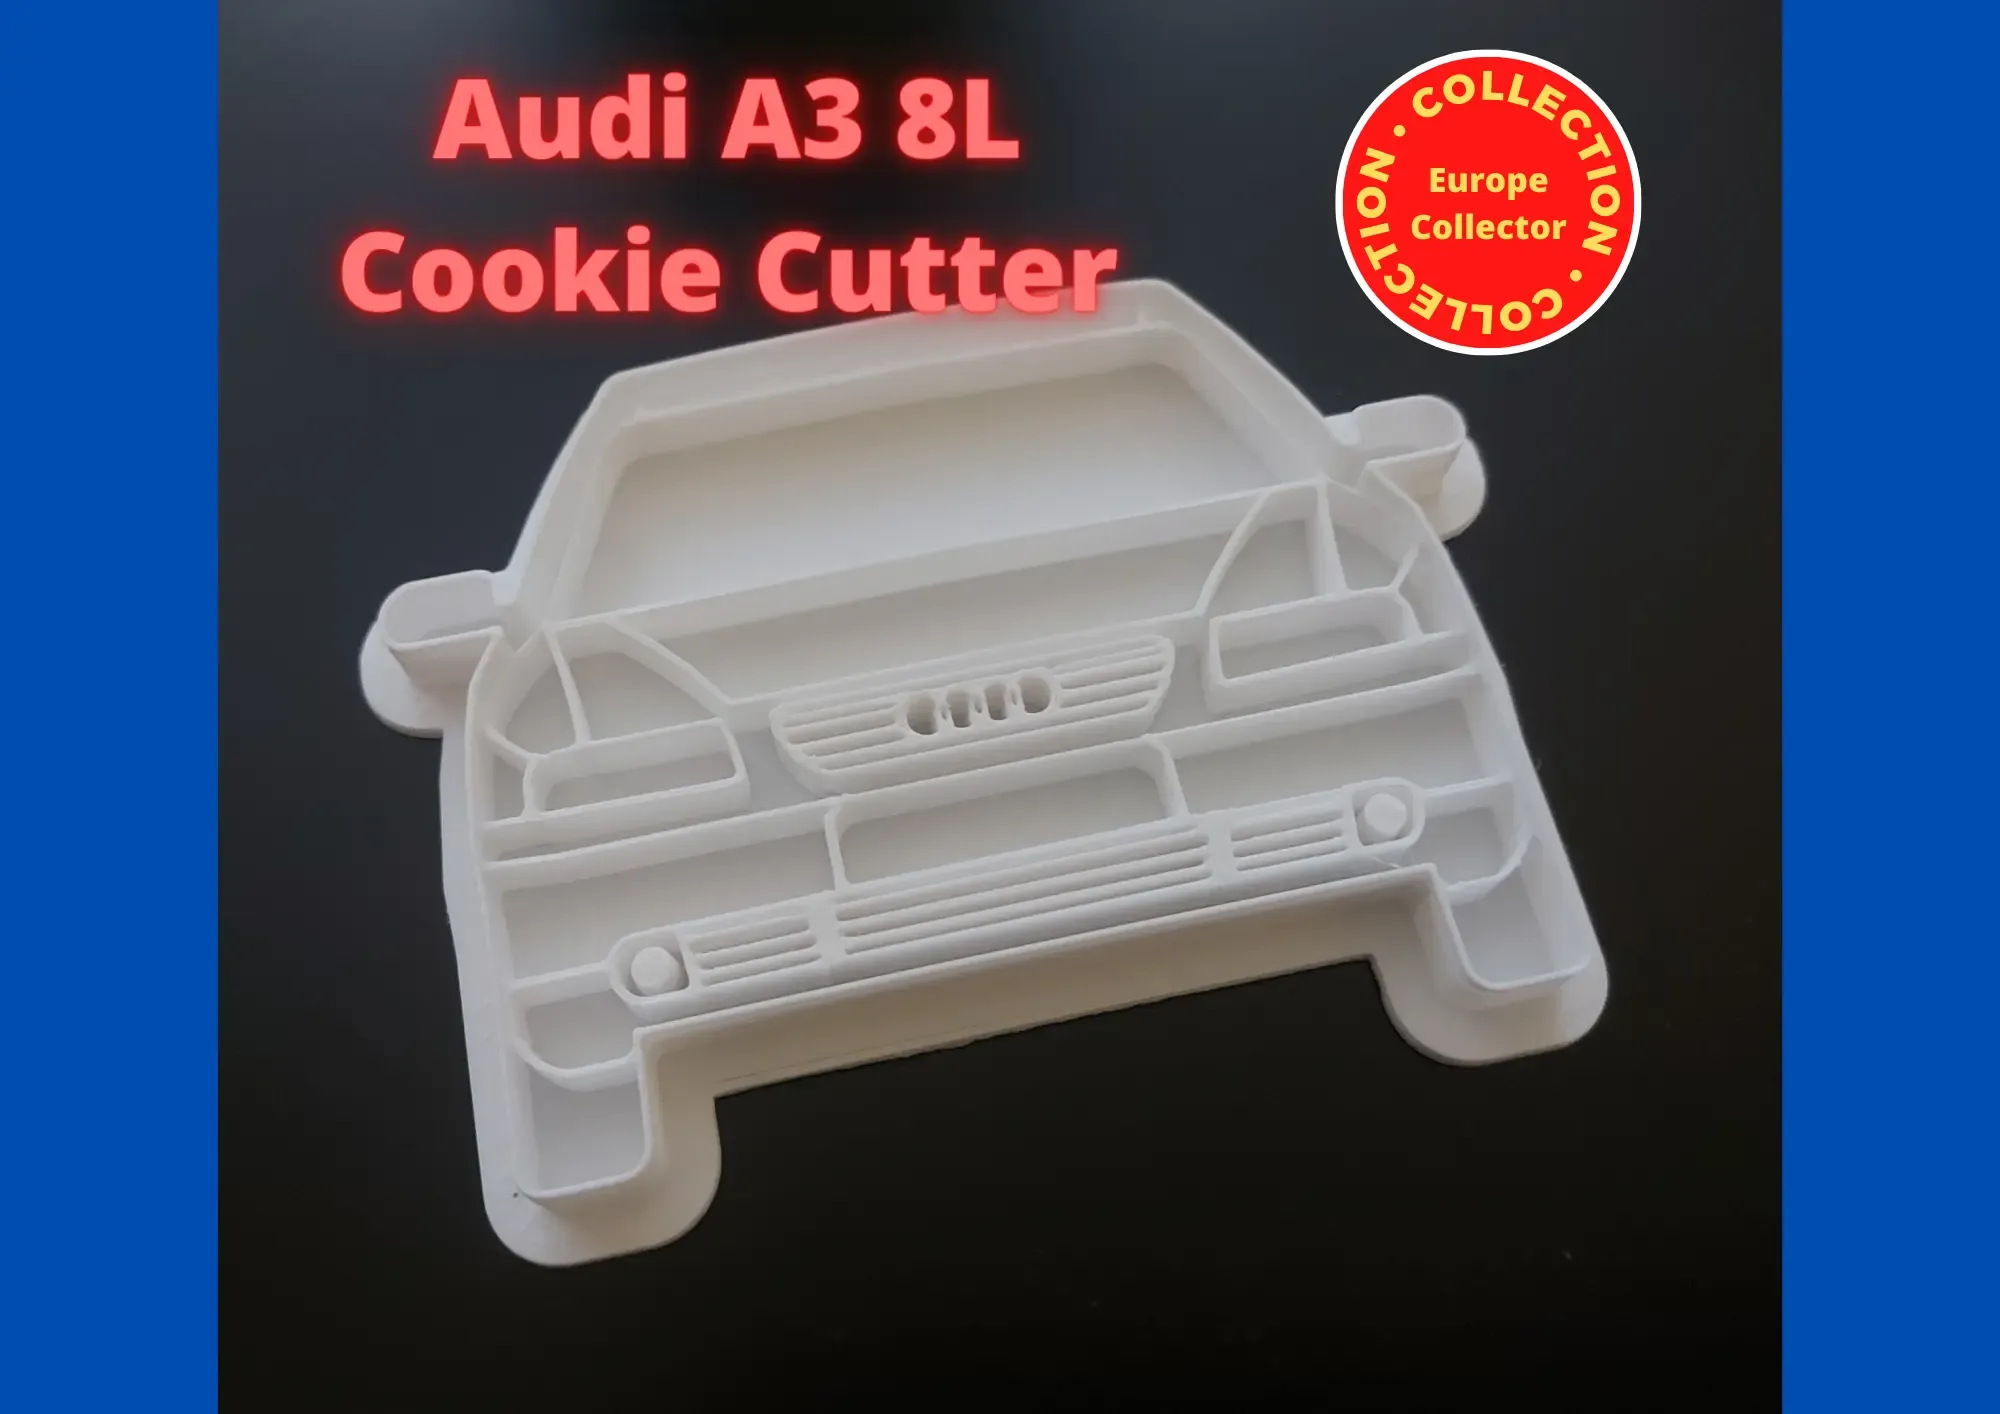 Audi A3 8L Cookie Cutter